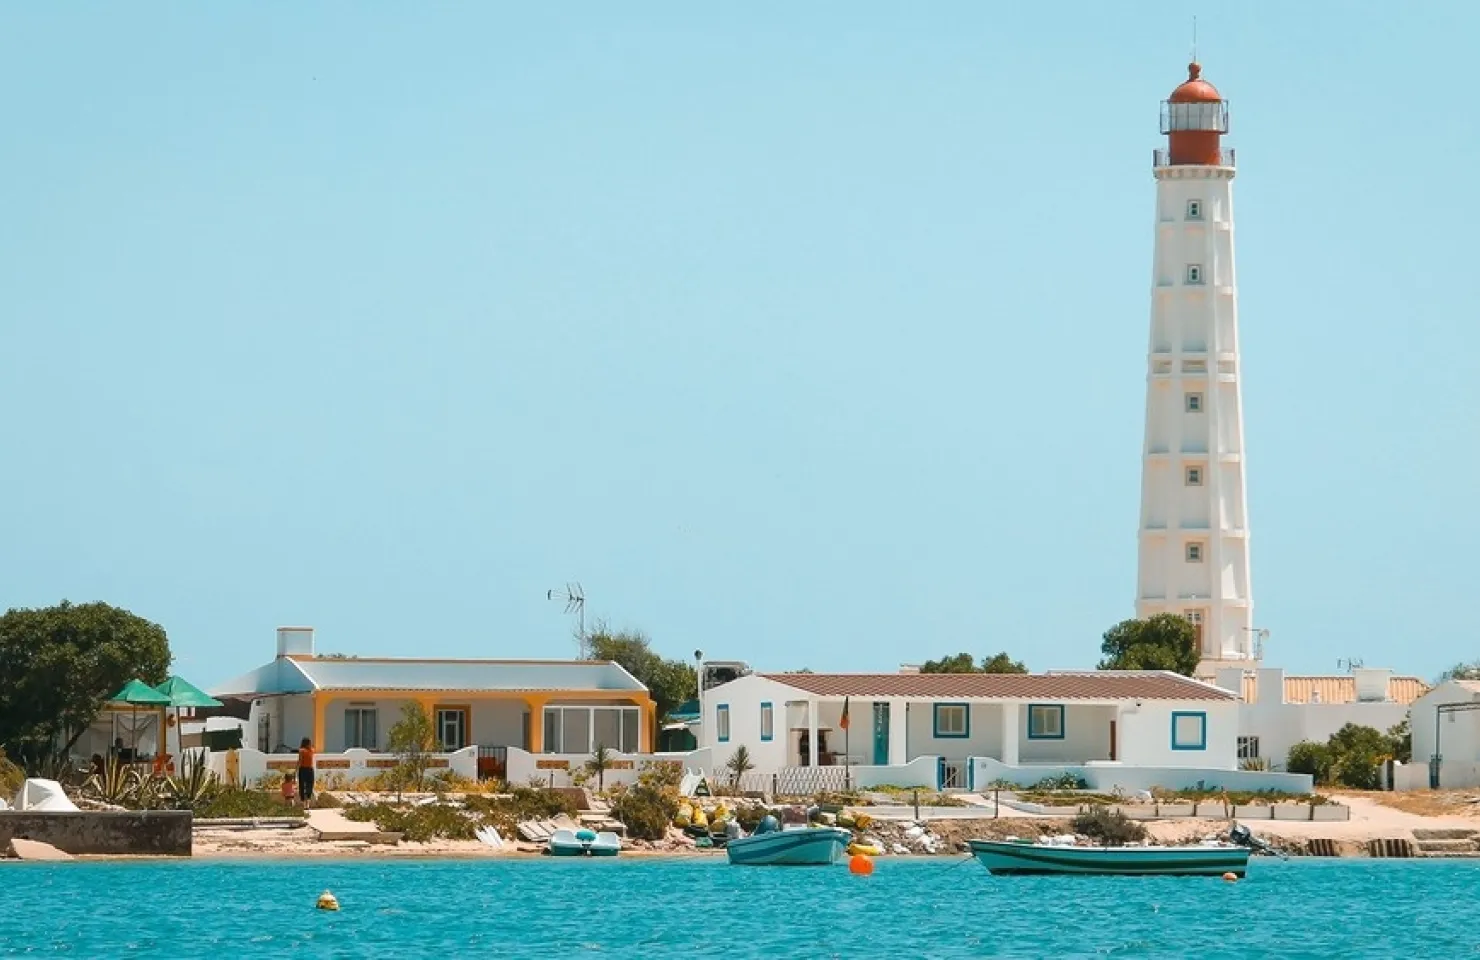 Aqua Taxi Farol Island - Algarve's Ria Formosa: Ultimate Activity Guide